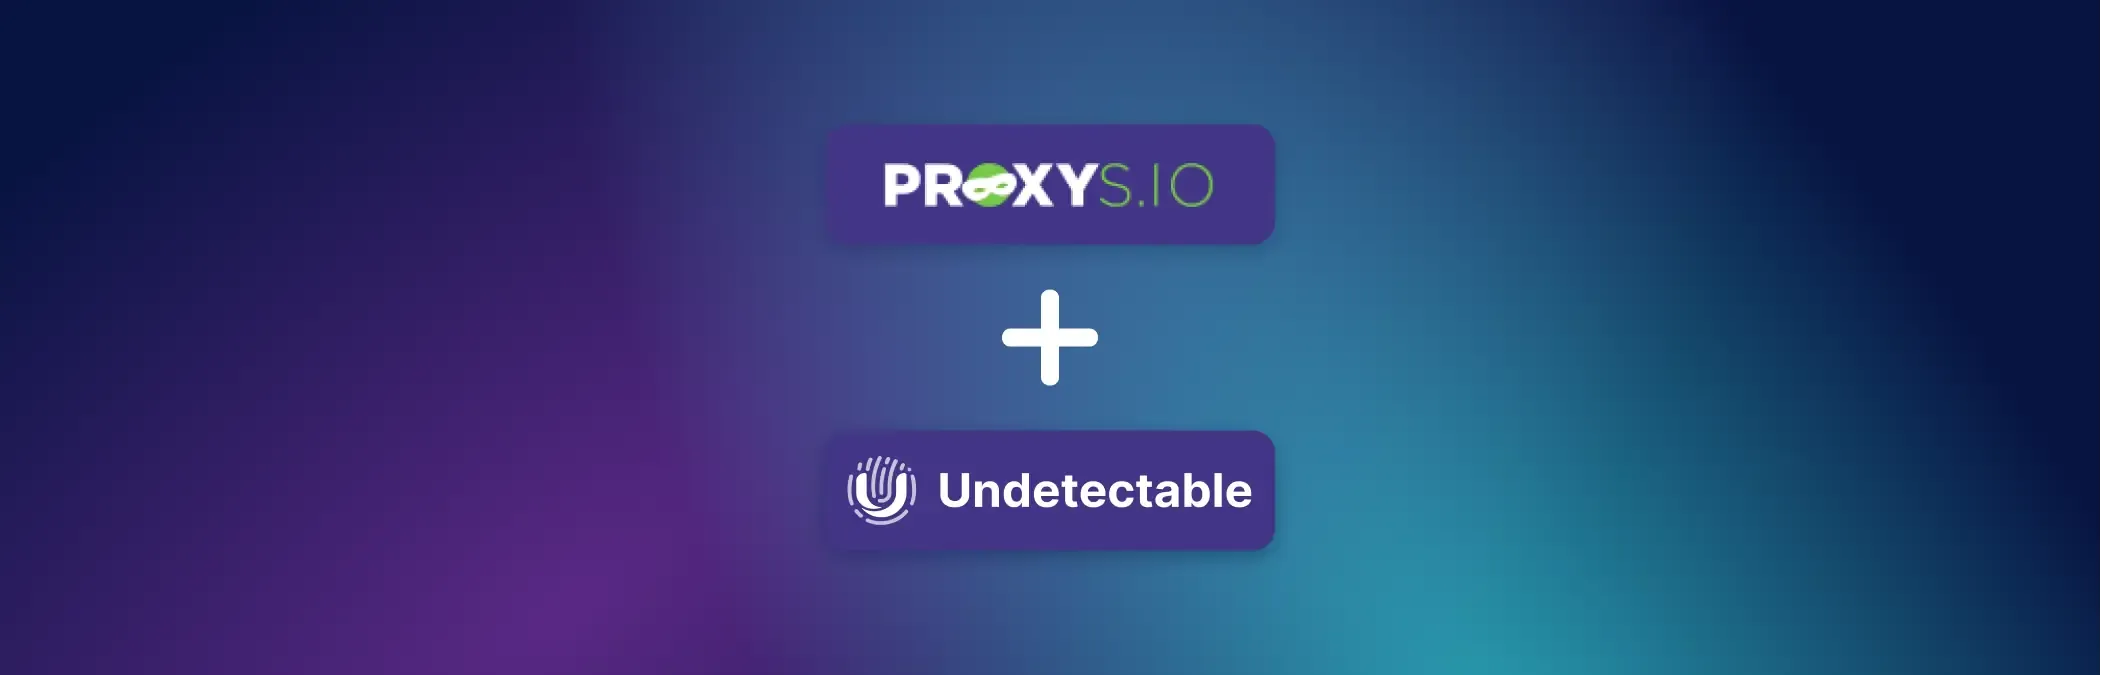 Guide d'utilisation du service Proxys.io dans le navigateur Undetectable